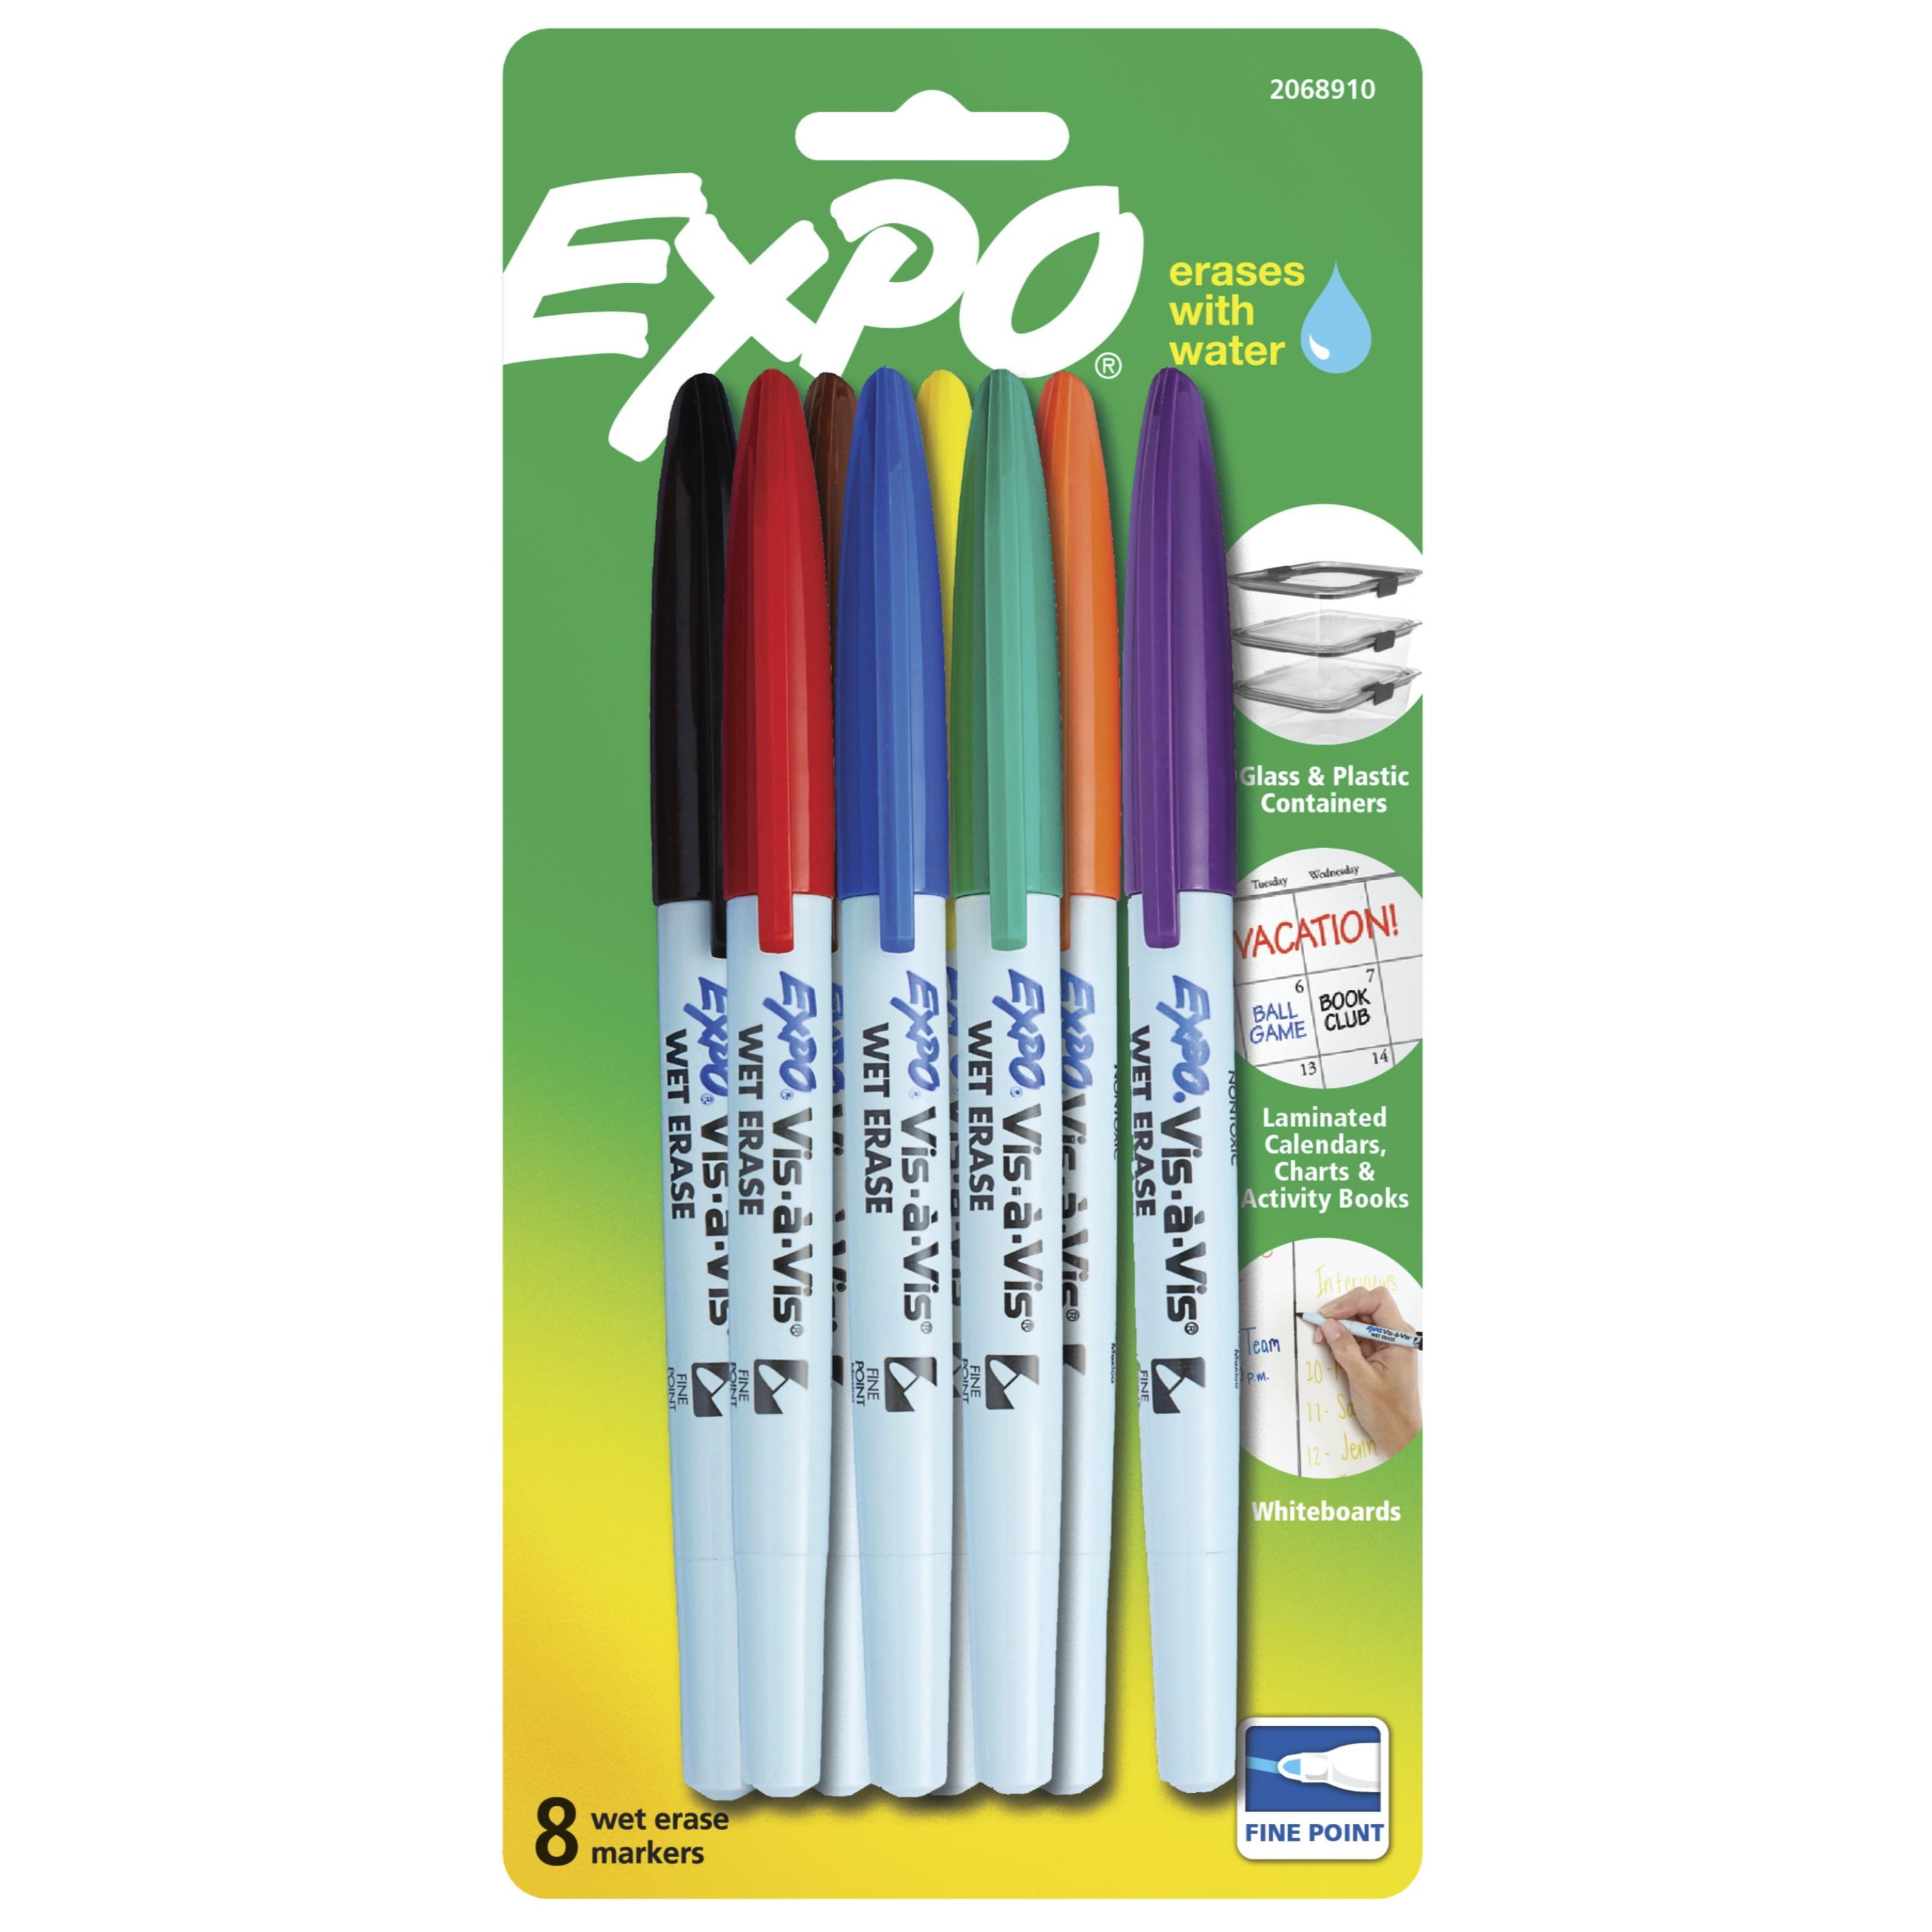 Expo Vis-A-Vis Wet-Erase Marker, Fine Point, Red, Dozen